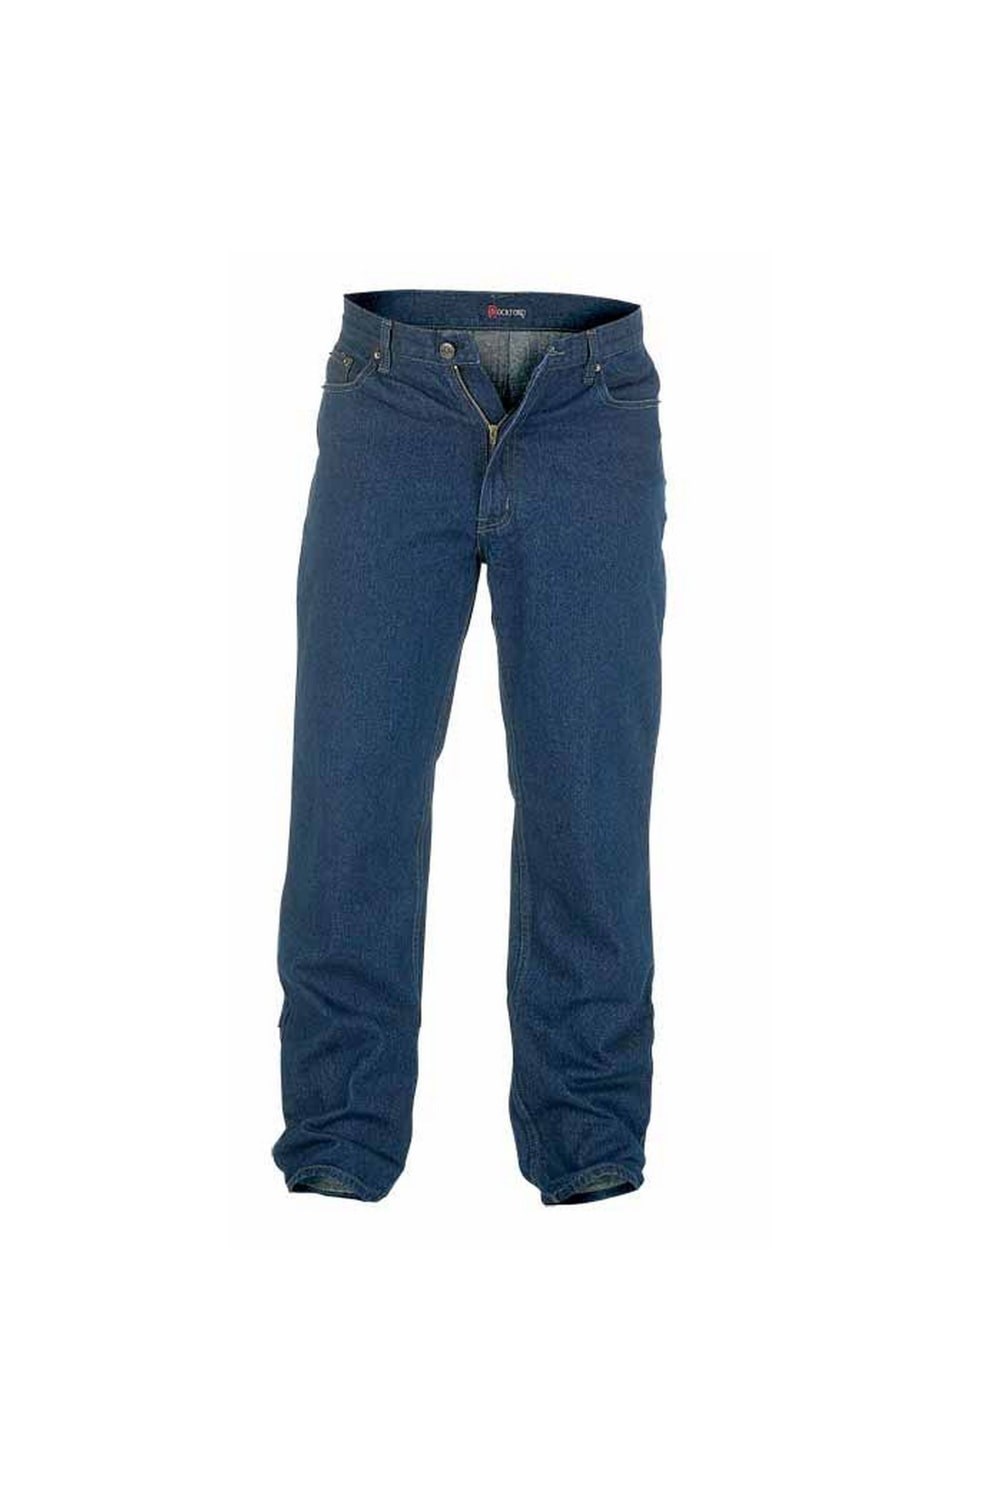 Rockford Mens Kingsize Comfort Fit Jeans -